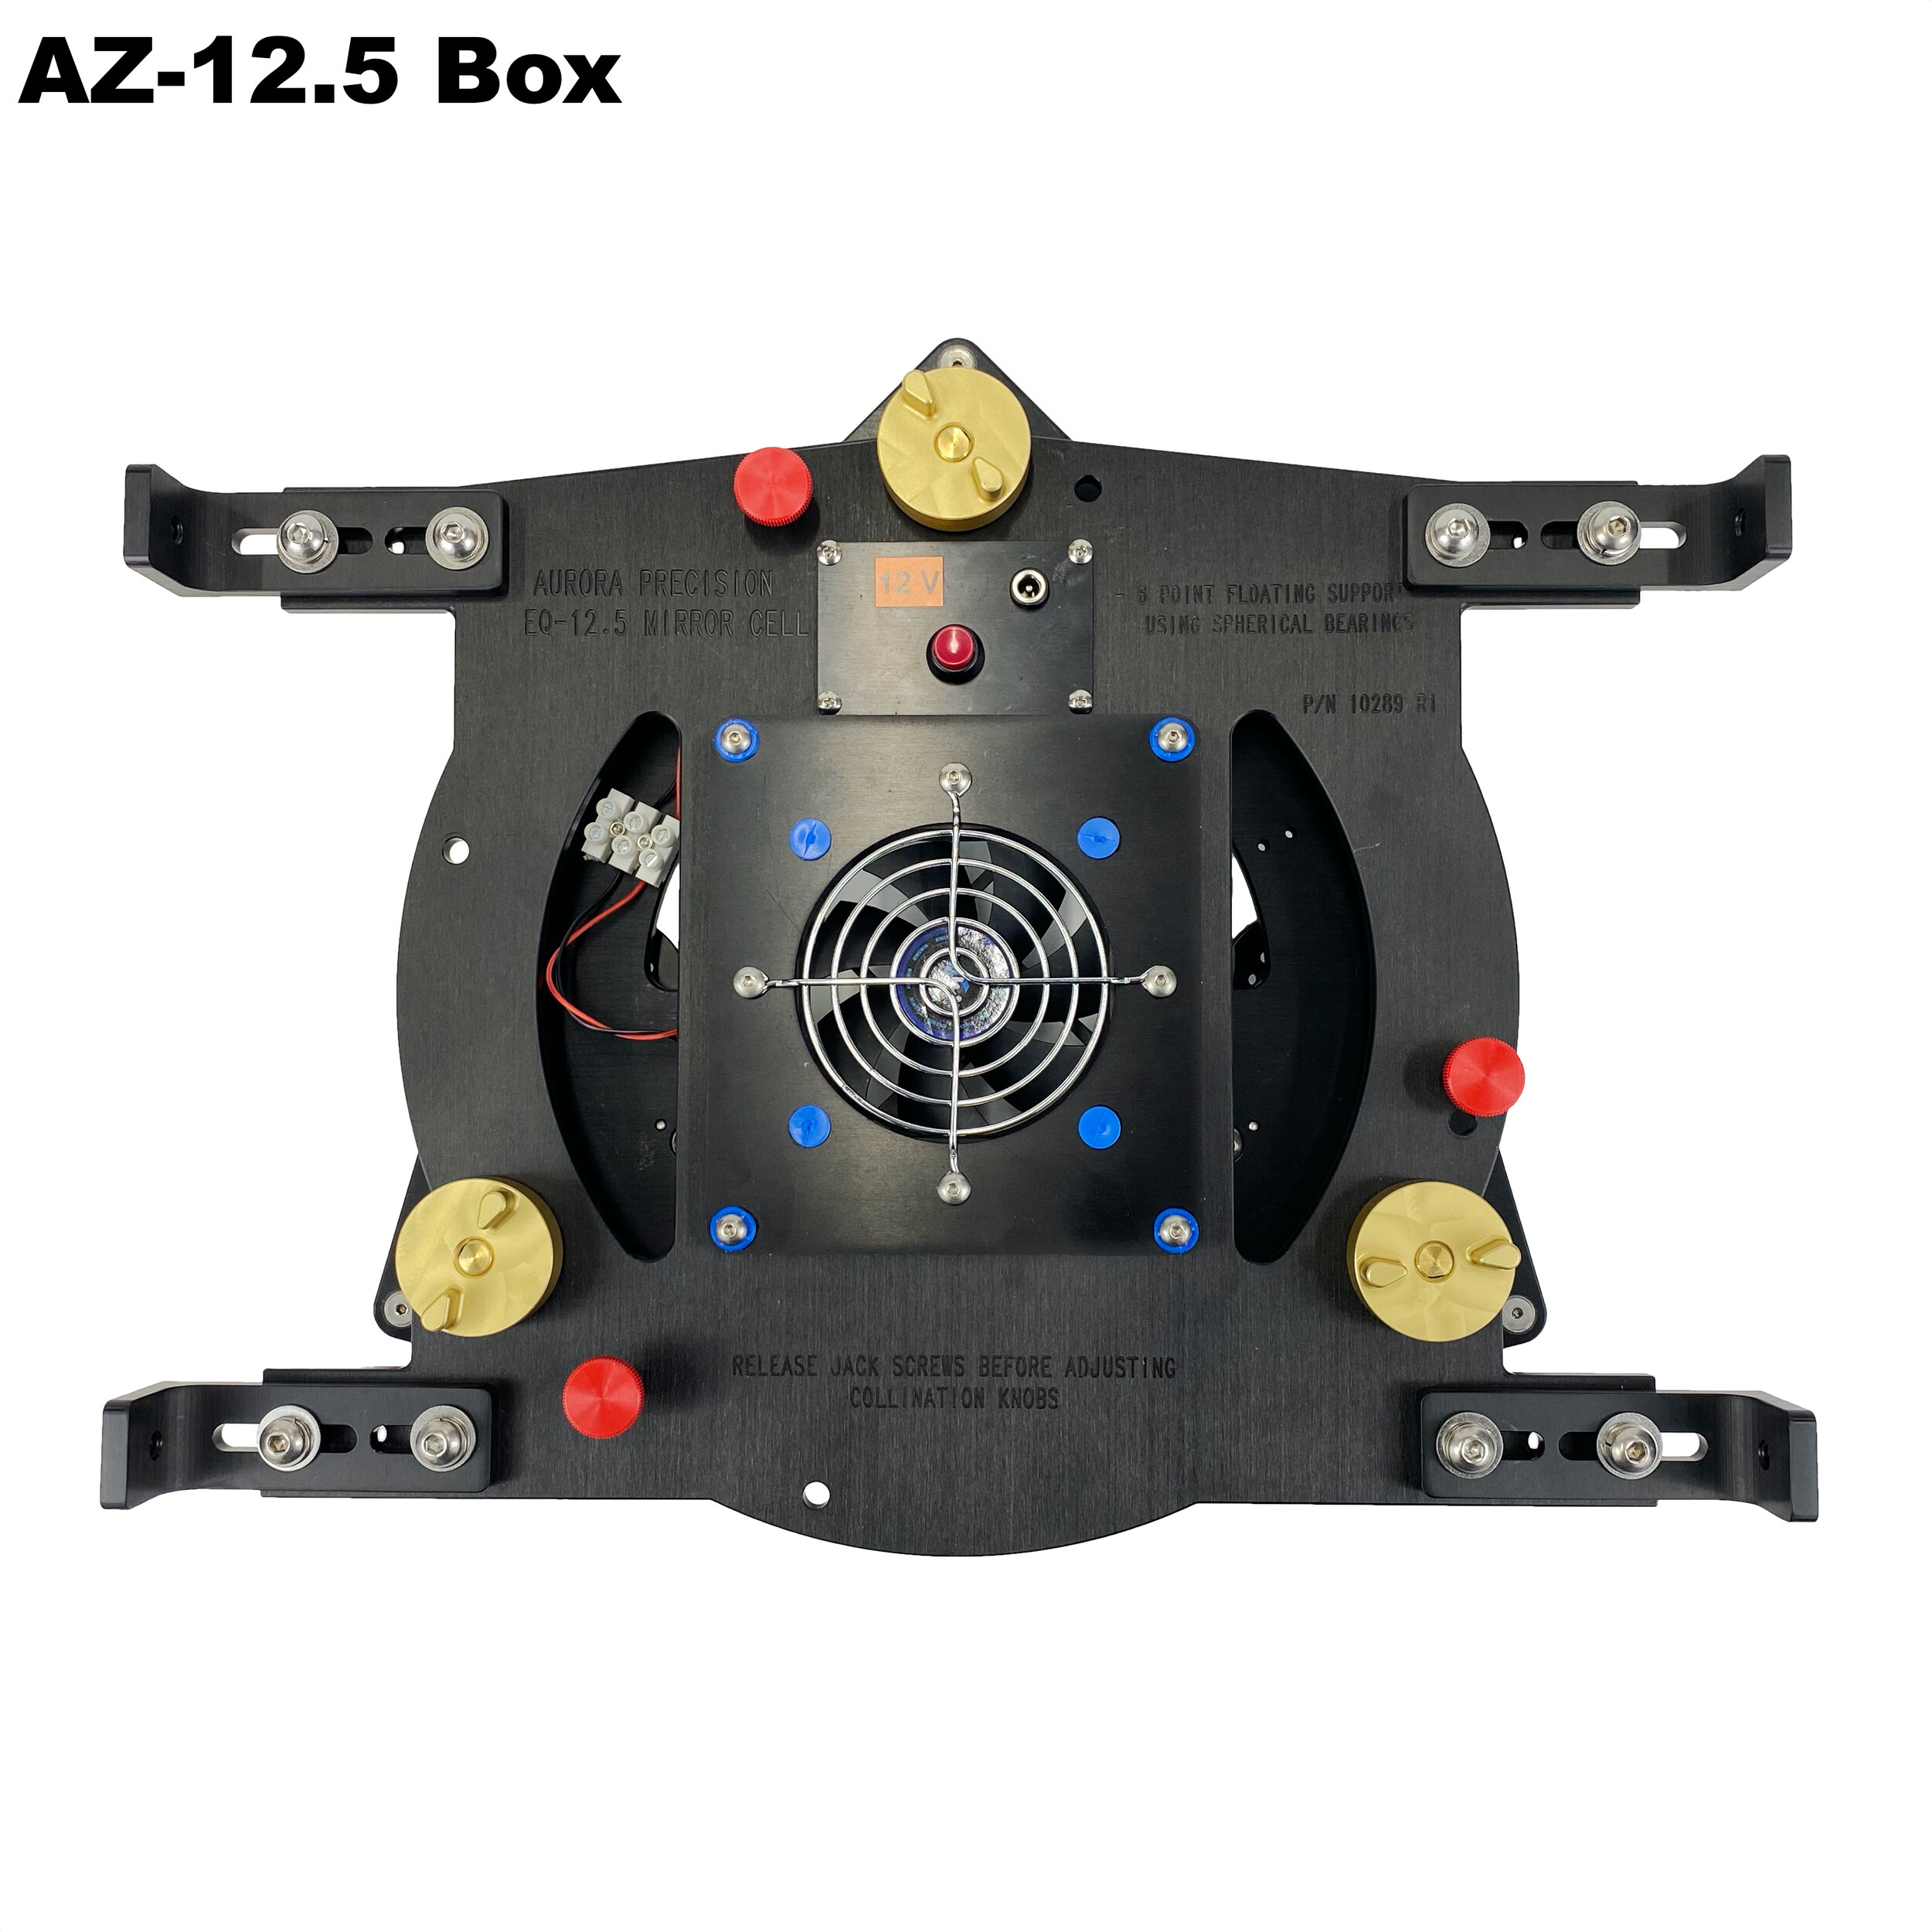 AZ-12.5 Box Rear.jpg